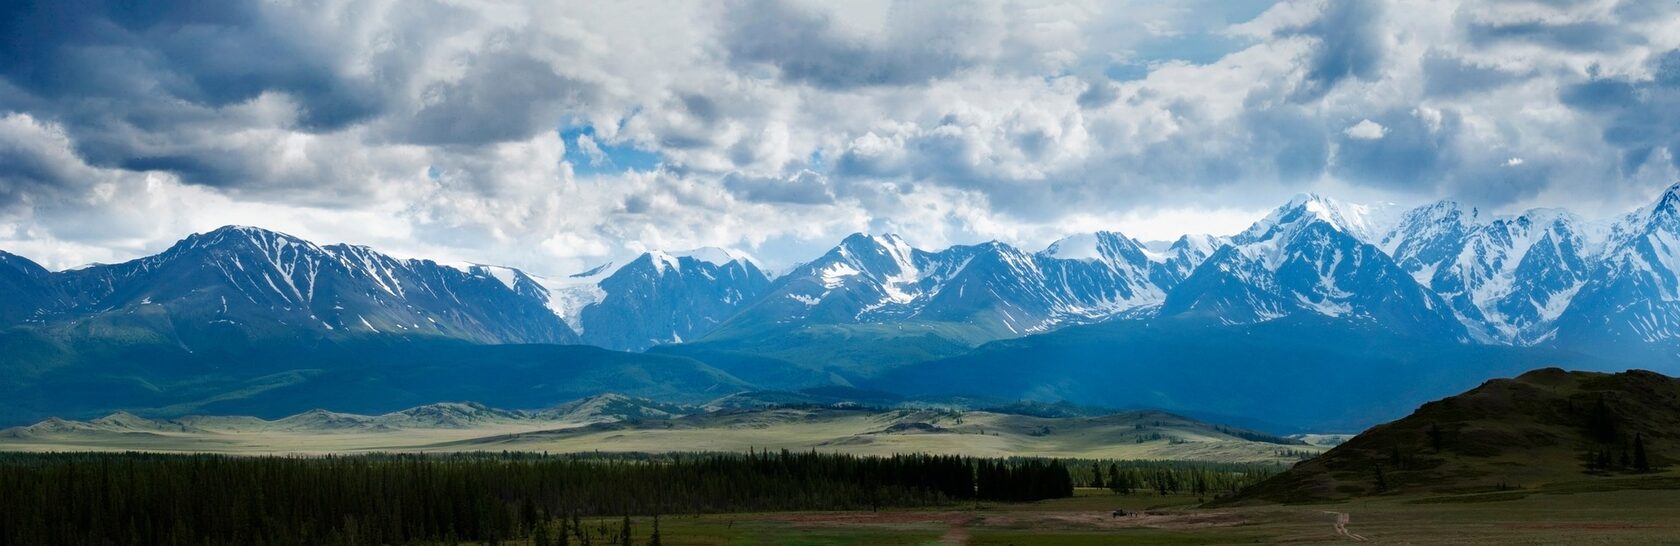 Горы Алтая панорама фото